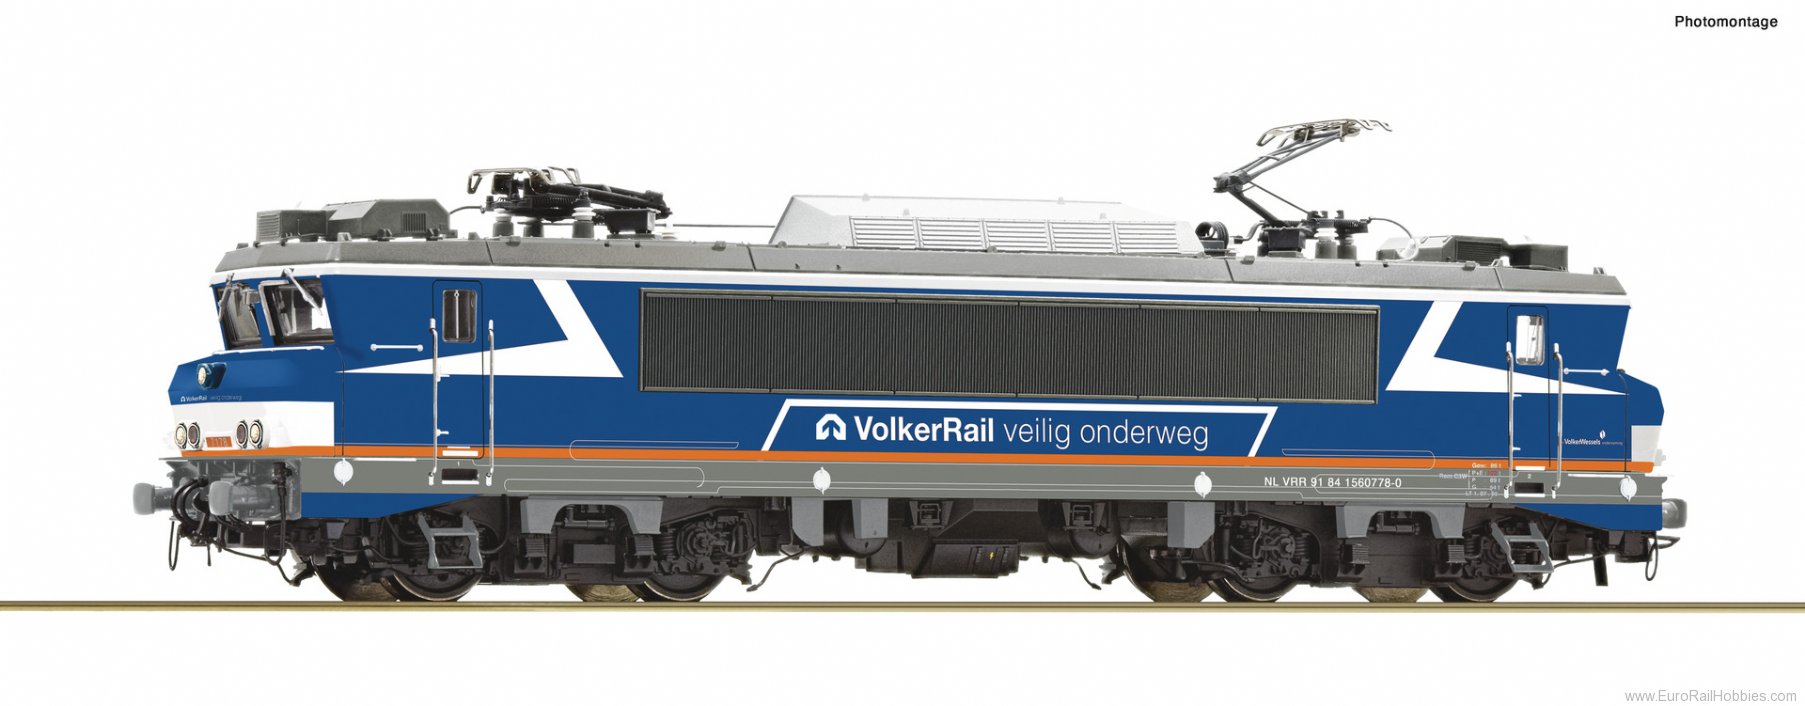 Roco 7510010 Electric locomotive 7178, VolkerRail (Digital